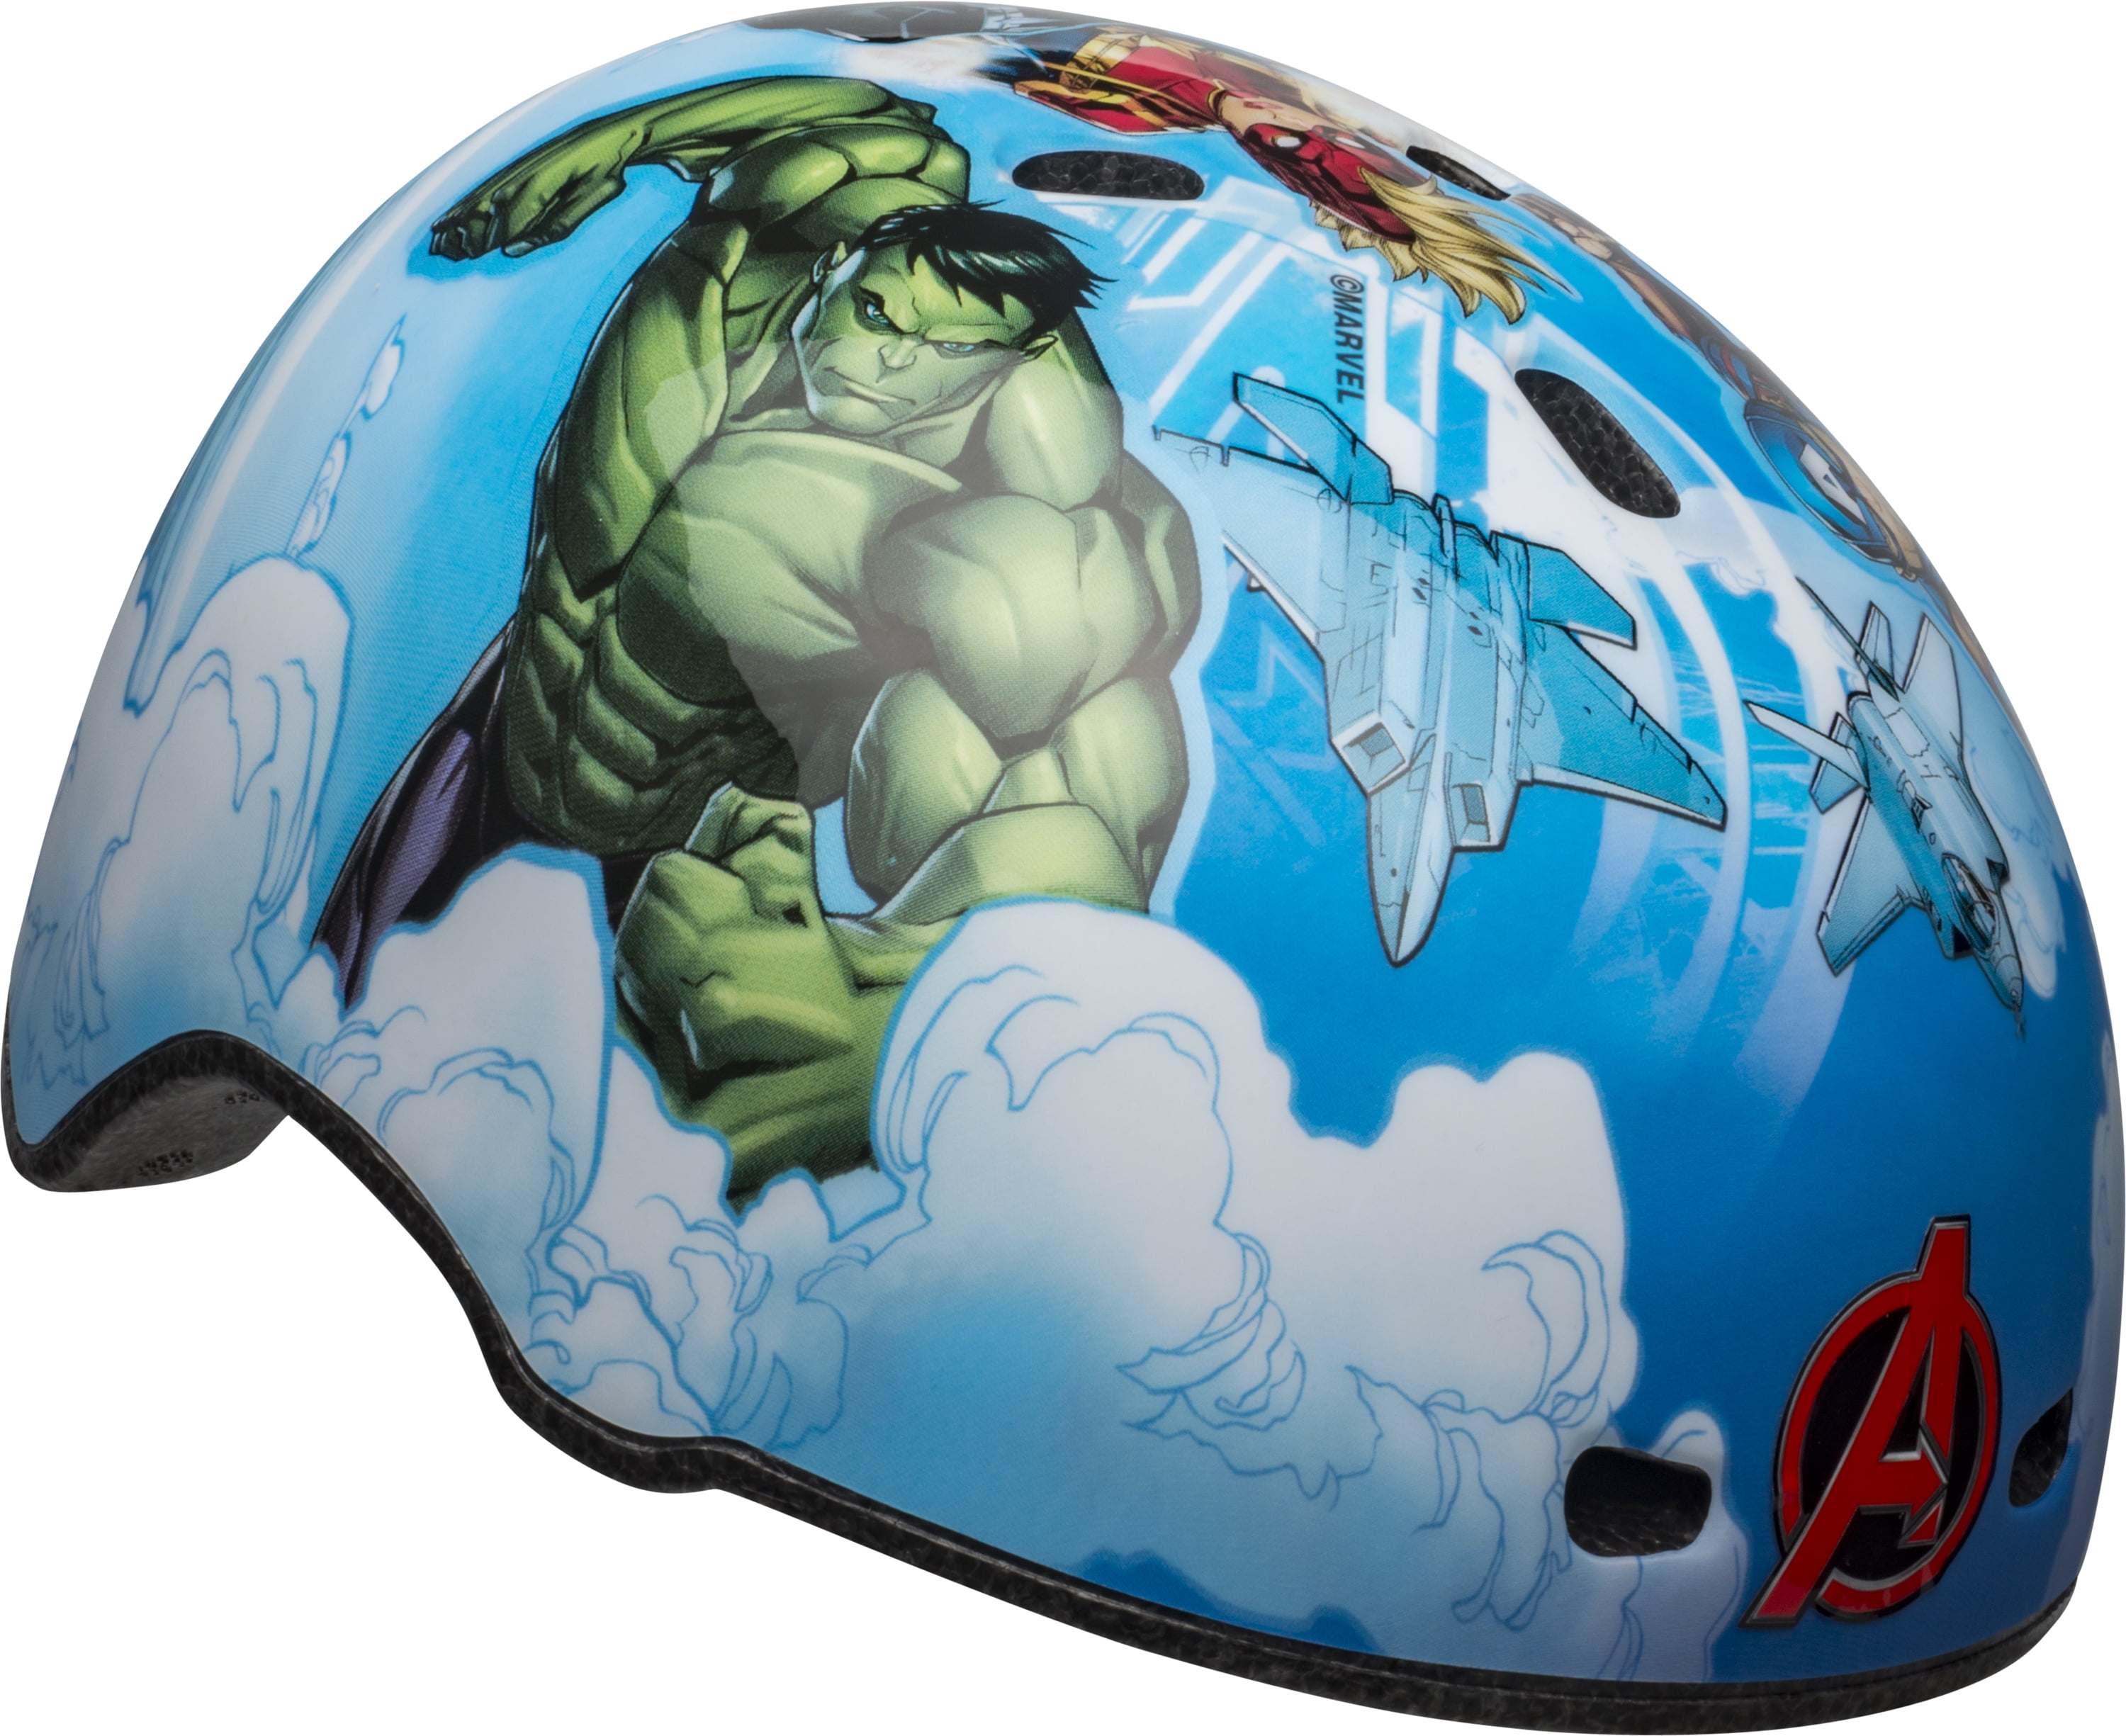 1 Count Bell Marvel Avengers CPSC ASTM Age 8 To 14 Gray Multi Sport Helmet 